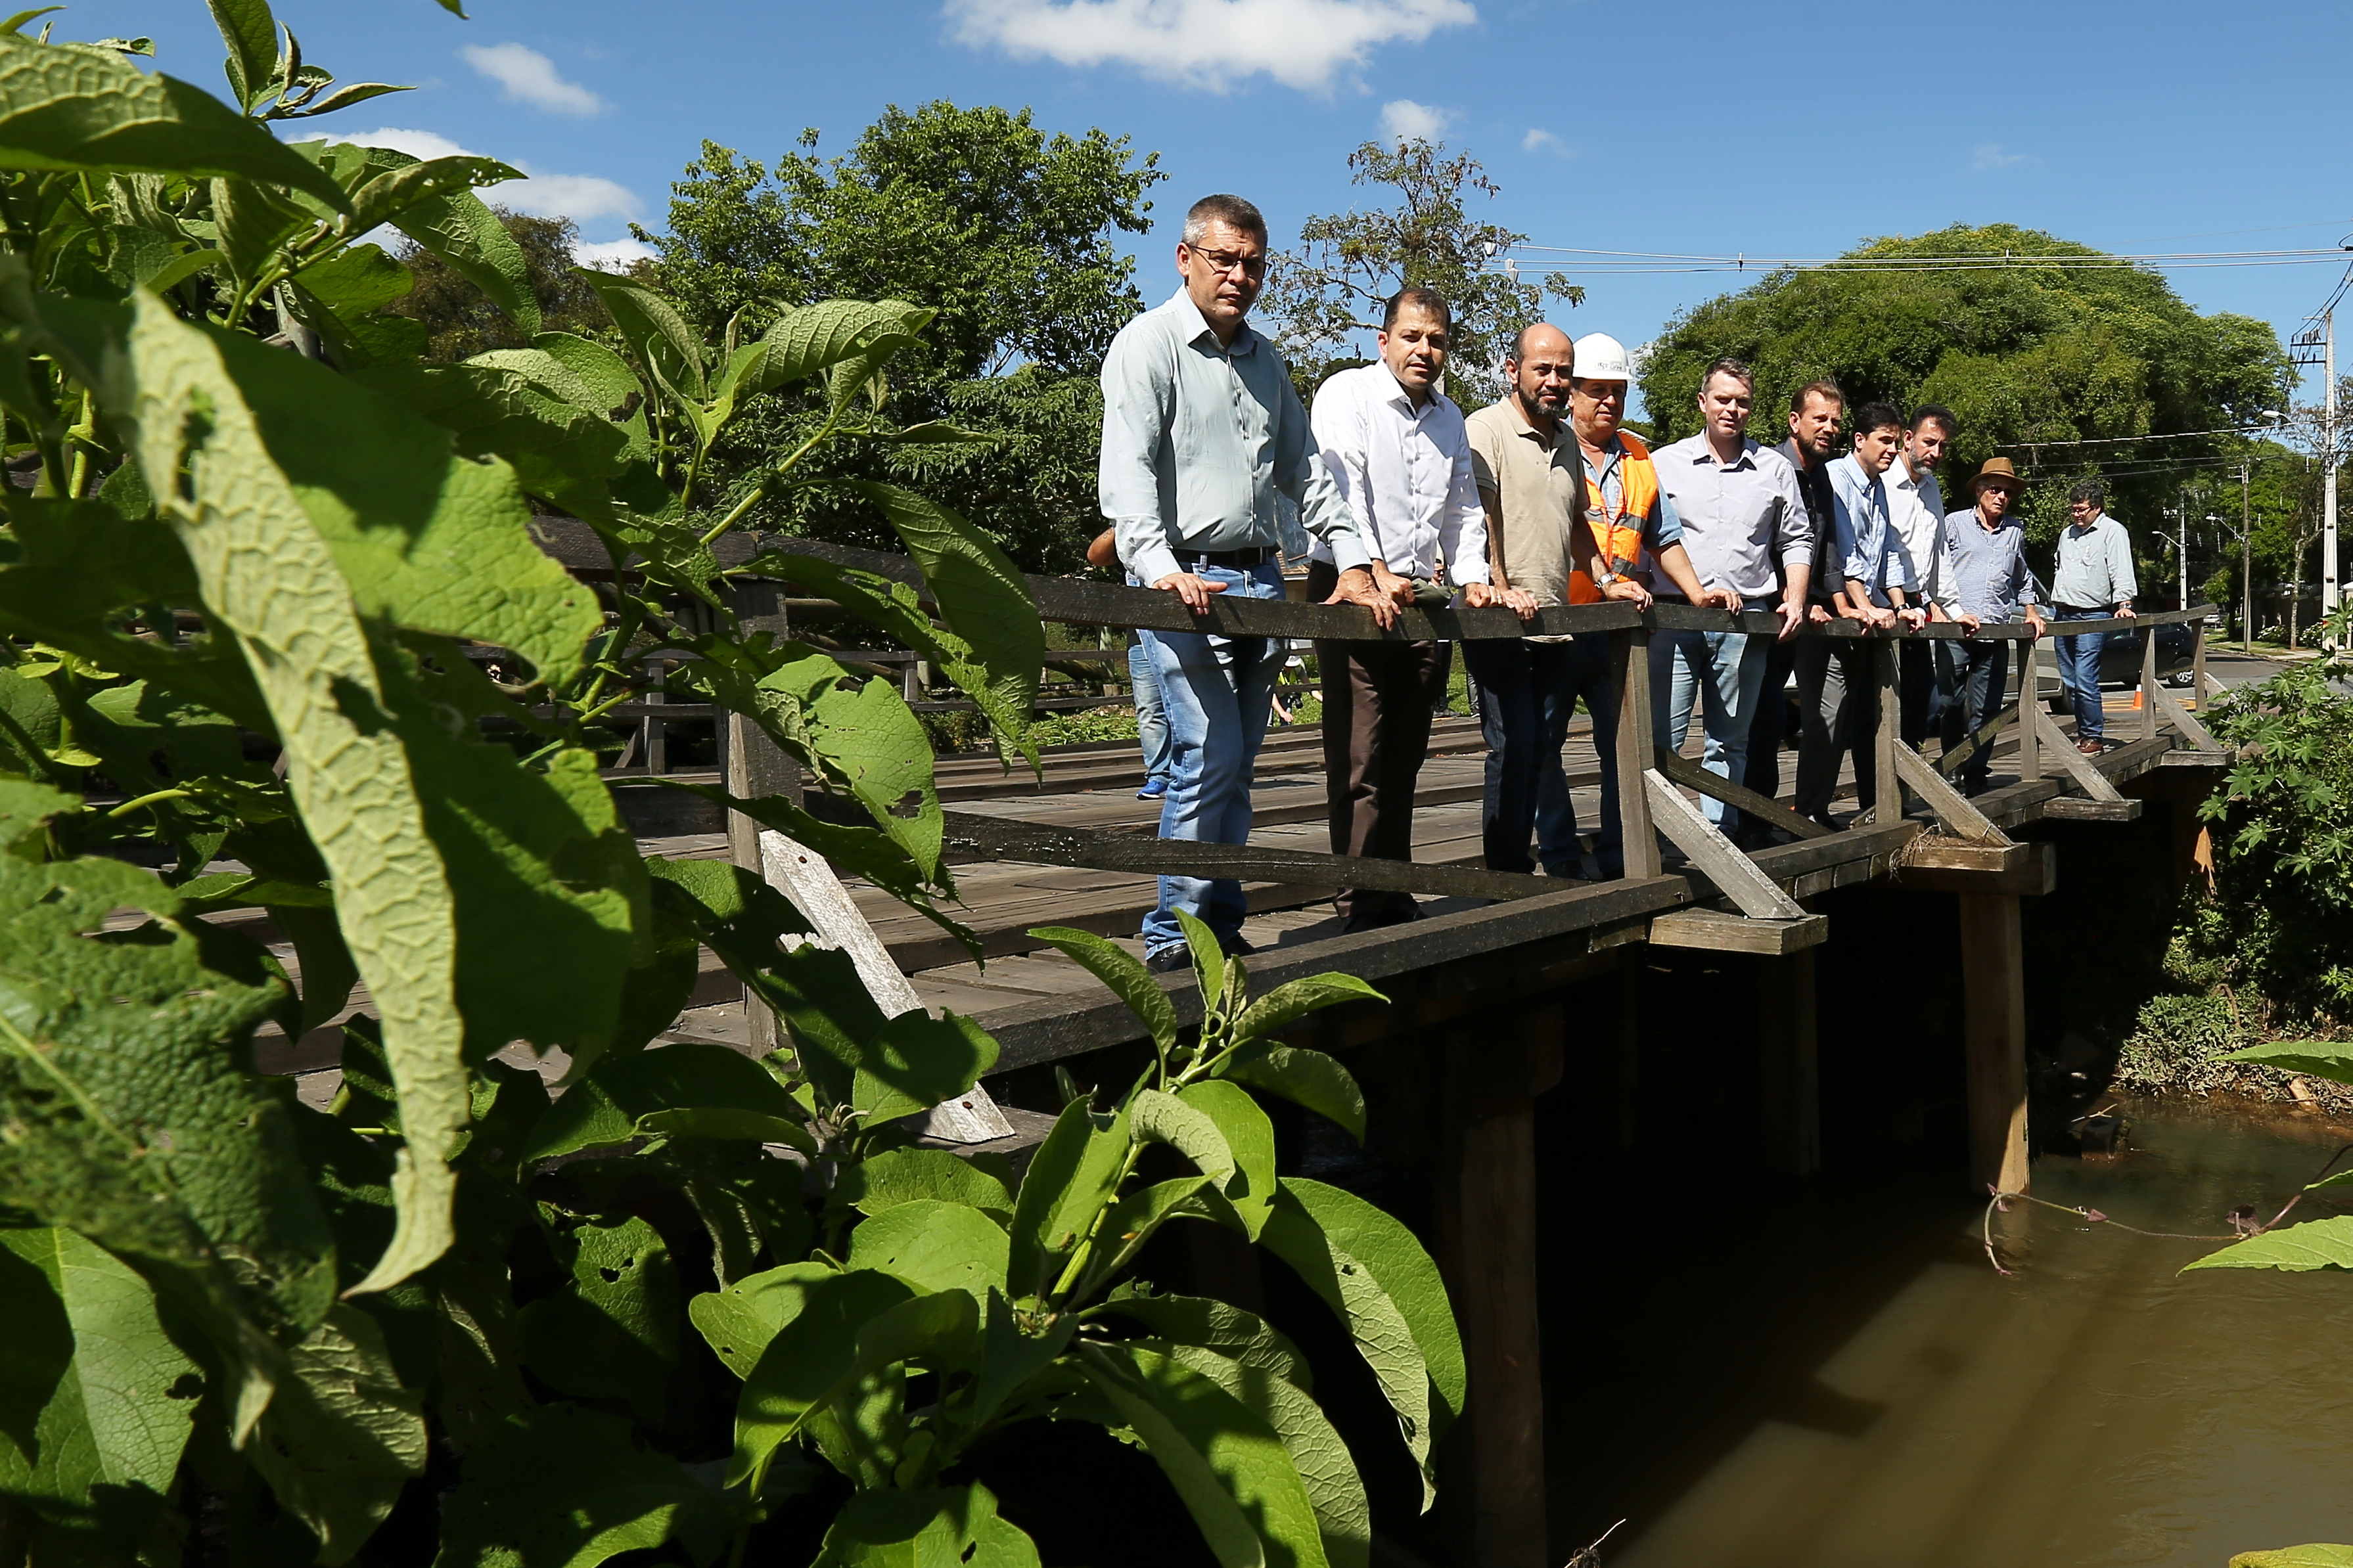  Comissão de Pontes e Viadutos da Câmara encontra problemas estruturais e funcionais na Ponte de madeira do Tingui